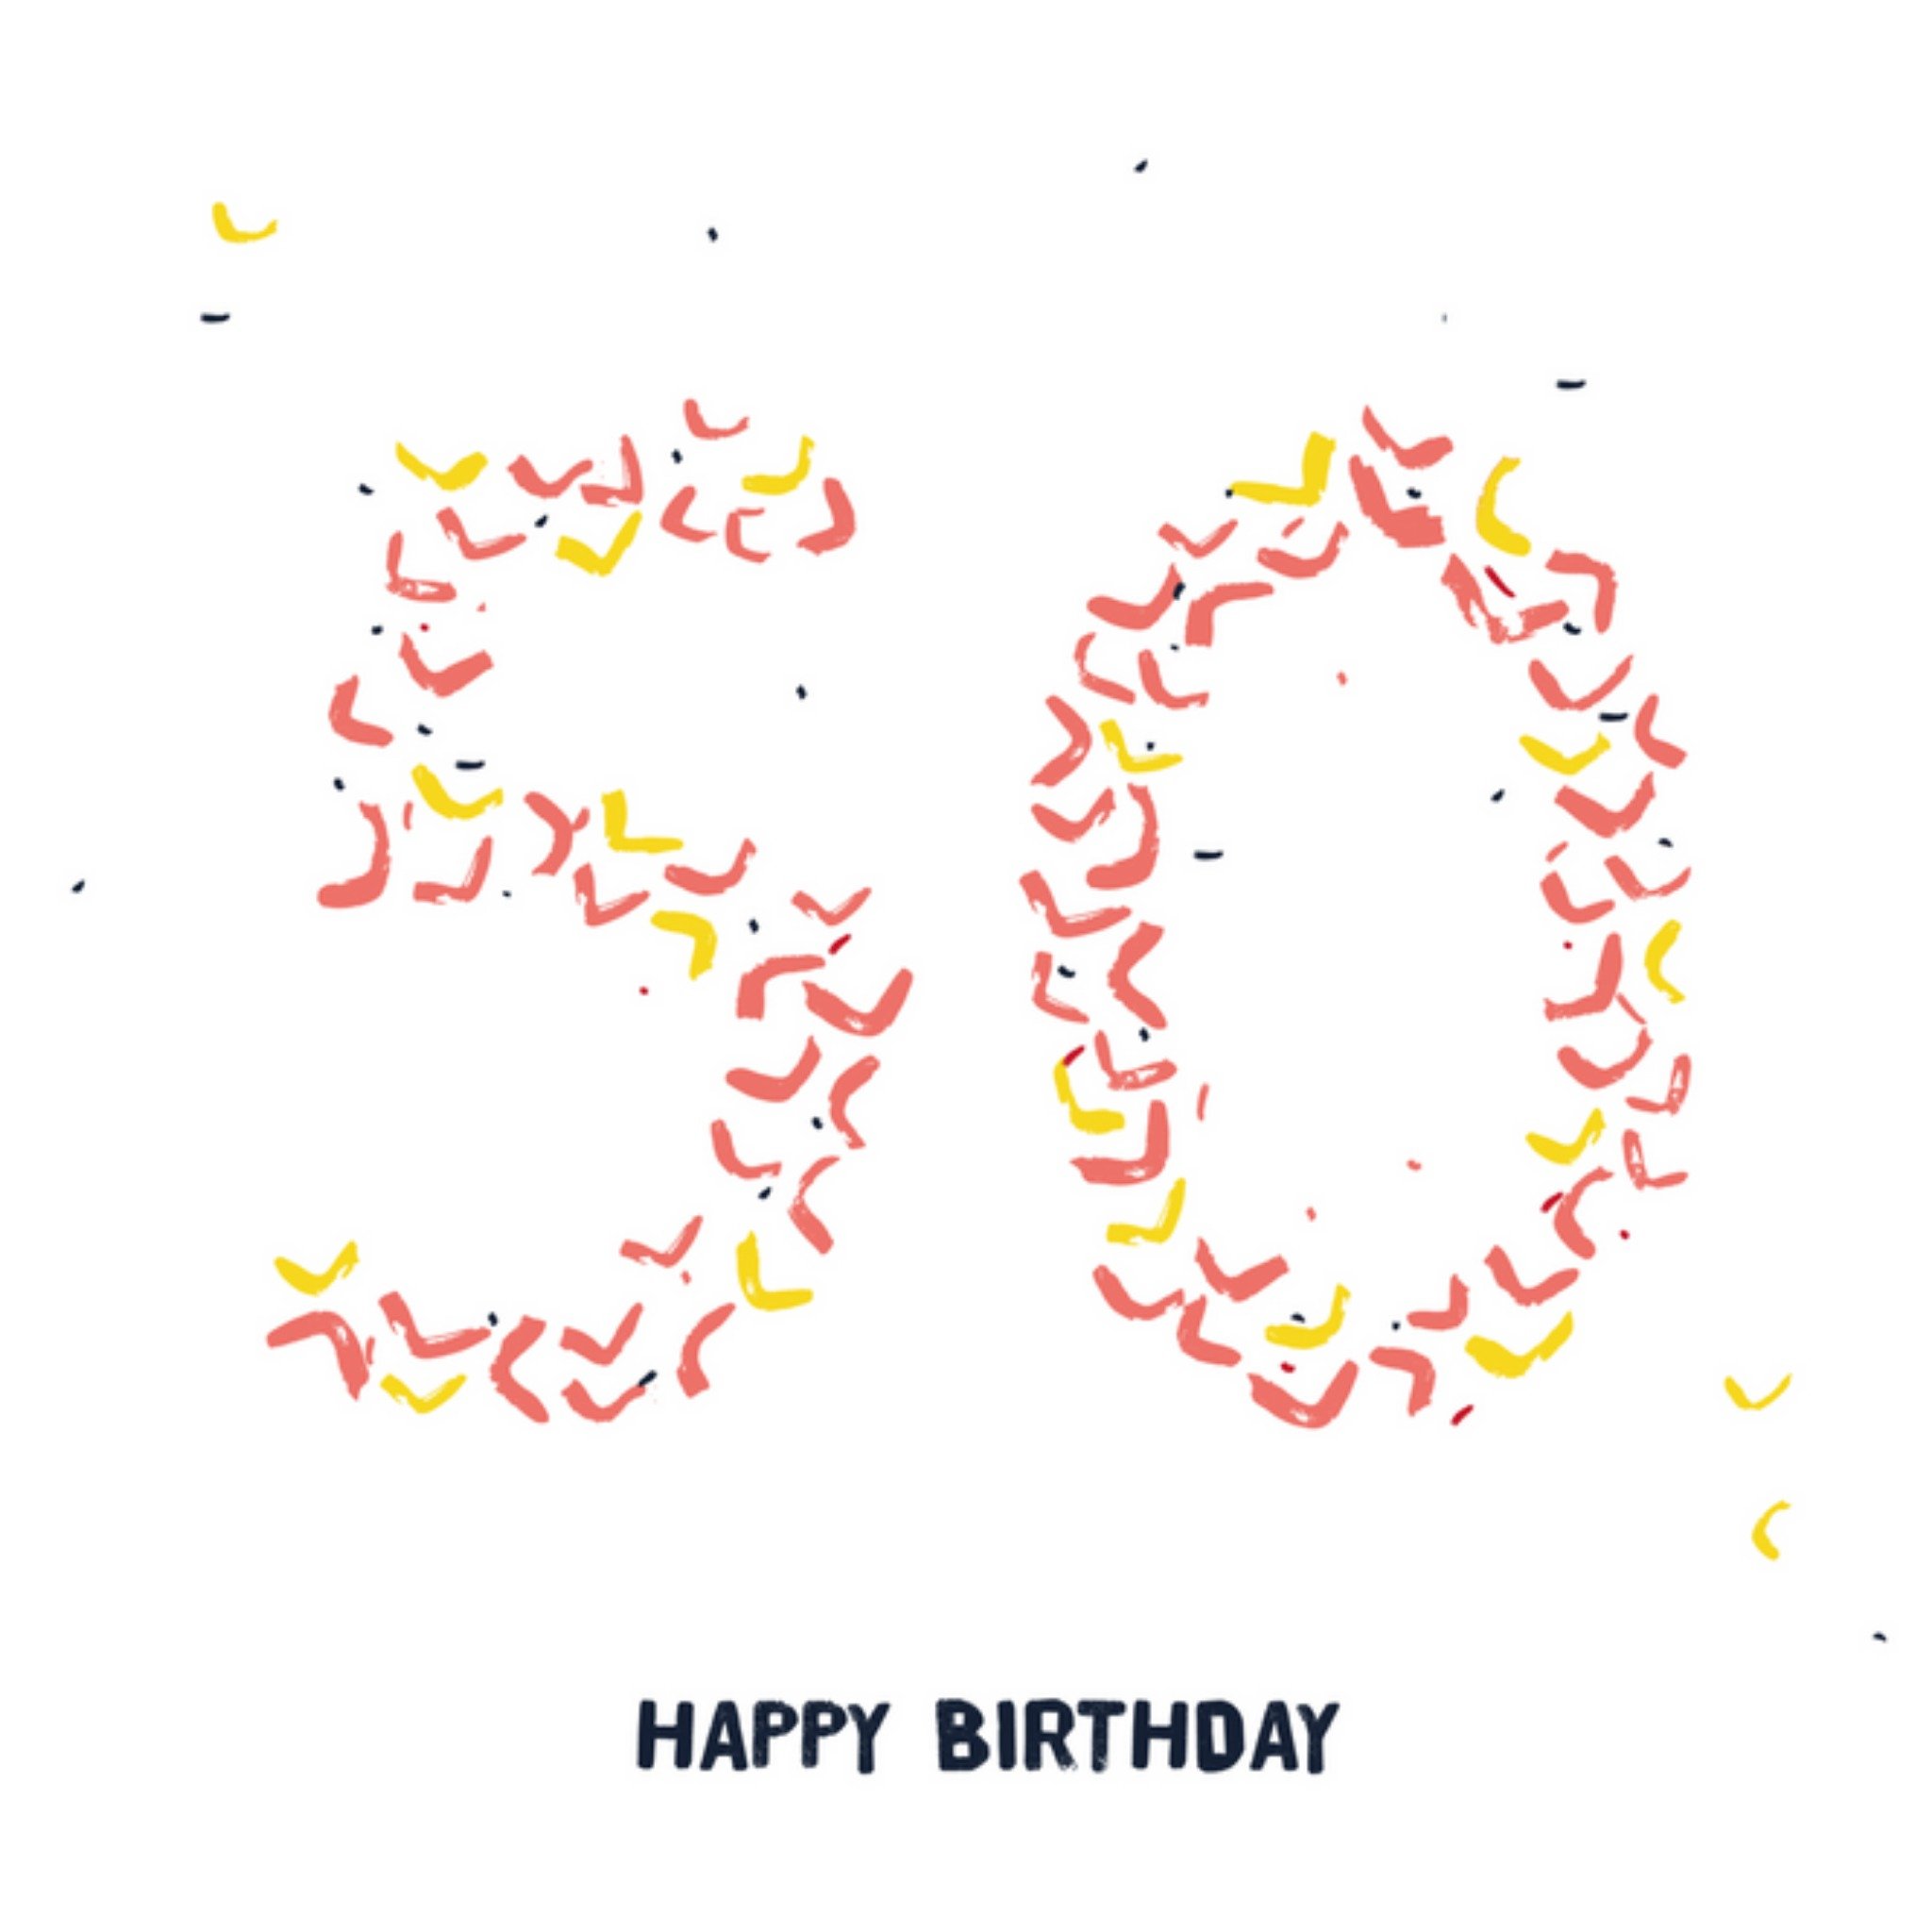 Kitchen of Smiles - Verjaardagskaart - 50 jaar